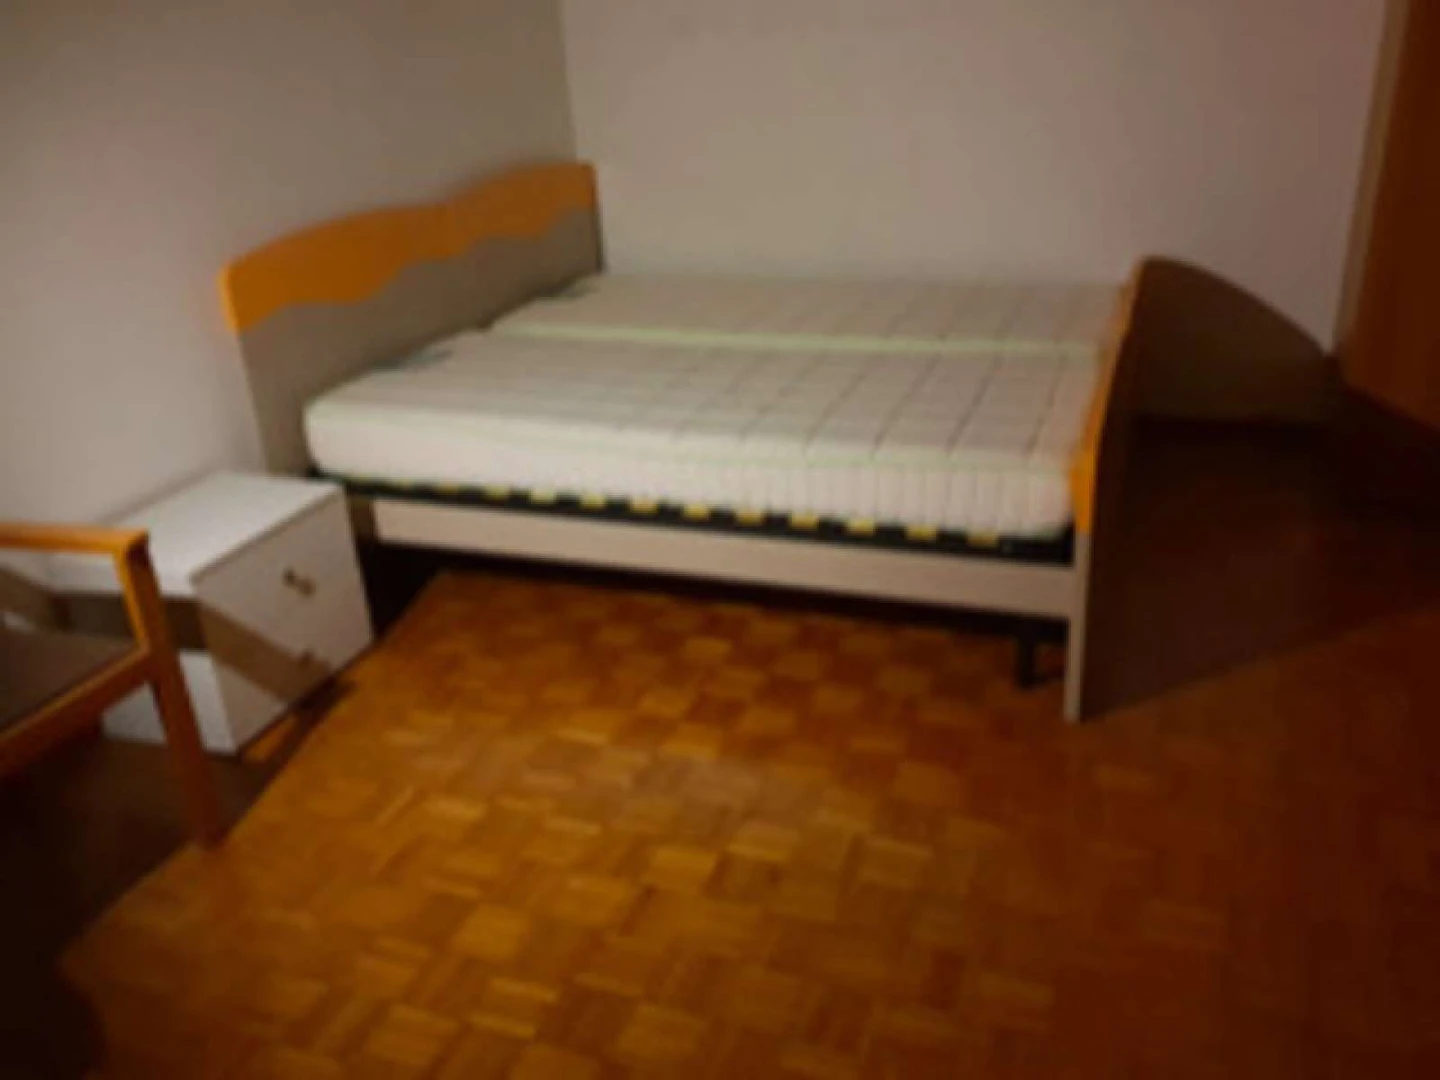 Zimmer mit Doppelbett zu vermieten Trient